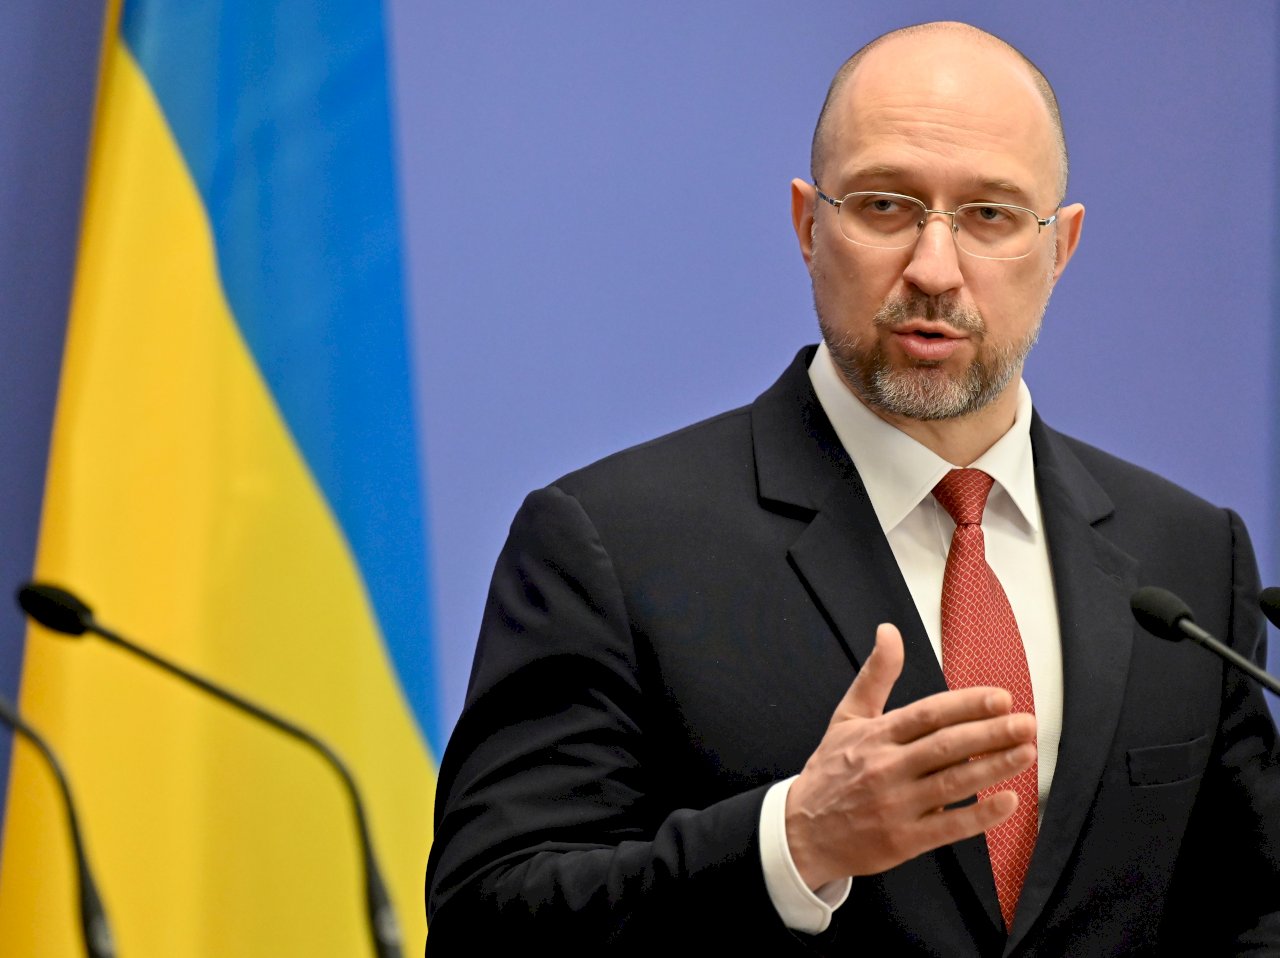 納瓦尼獄中身亡 烏克蘭總理敦促對俄實施新經濟制裁